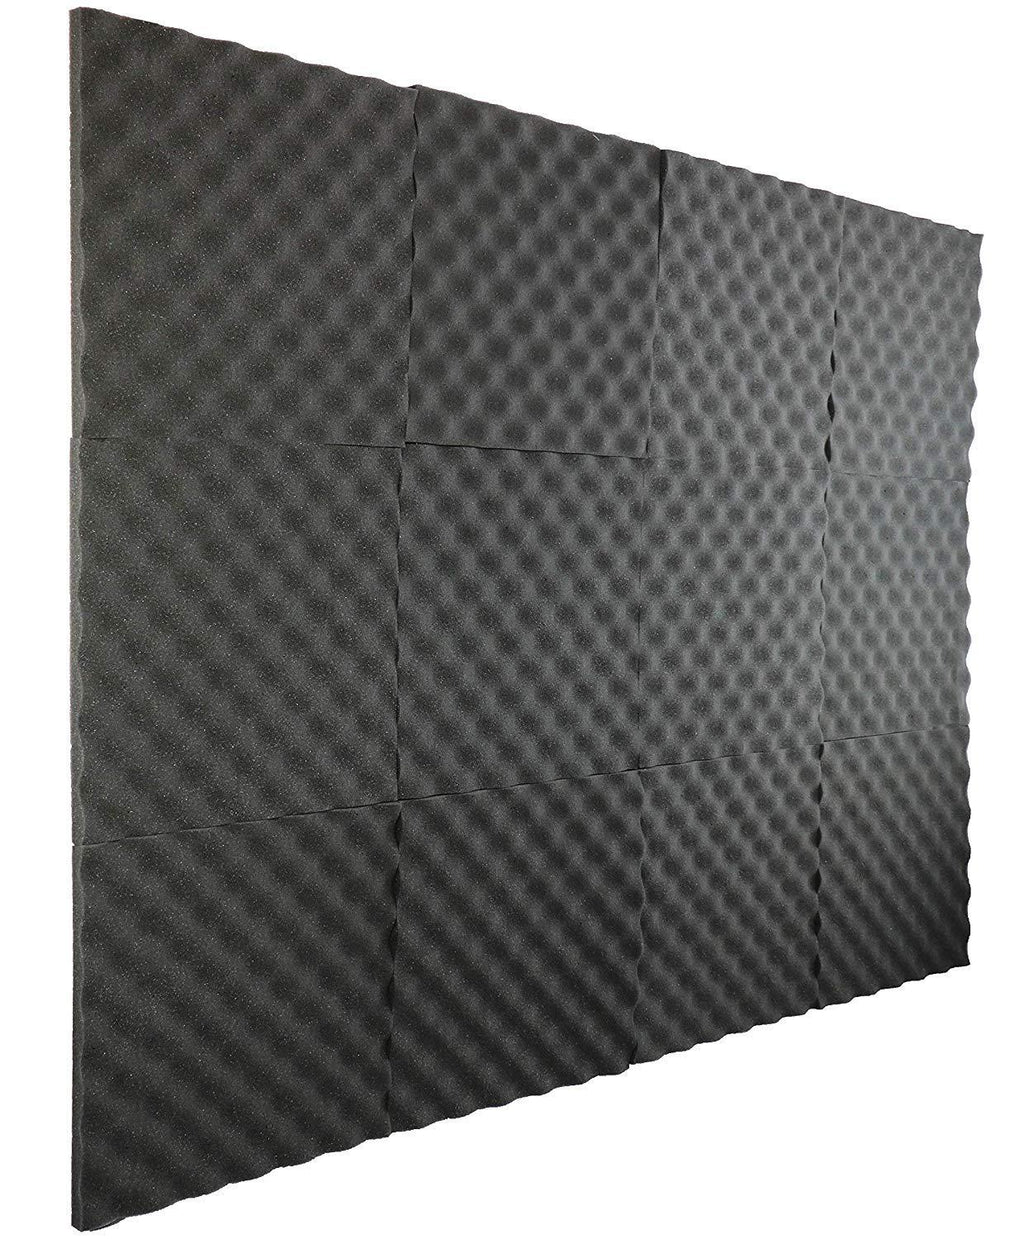 [AUSTRALIA] - New Level 12 Pack- Acoustic Panels Studio Foam Egg Crate 1" X 12" X 12" Charcoal 